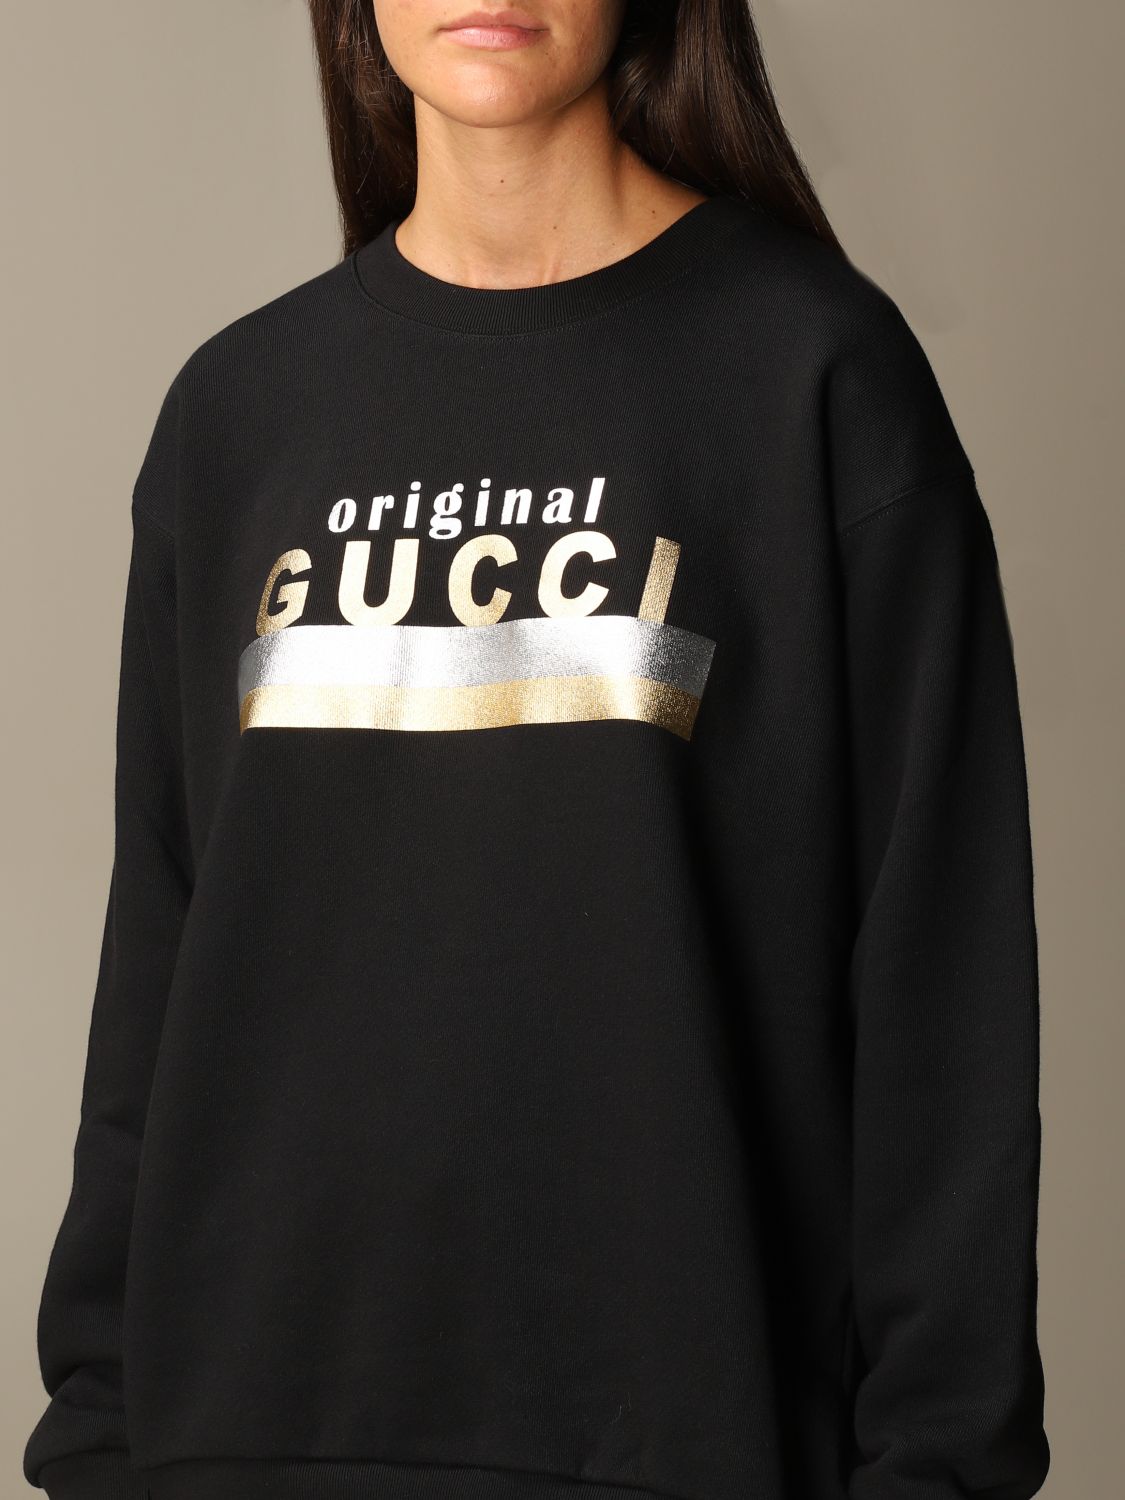 gucci sweatshirt women